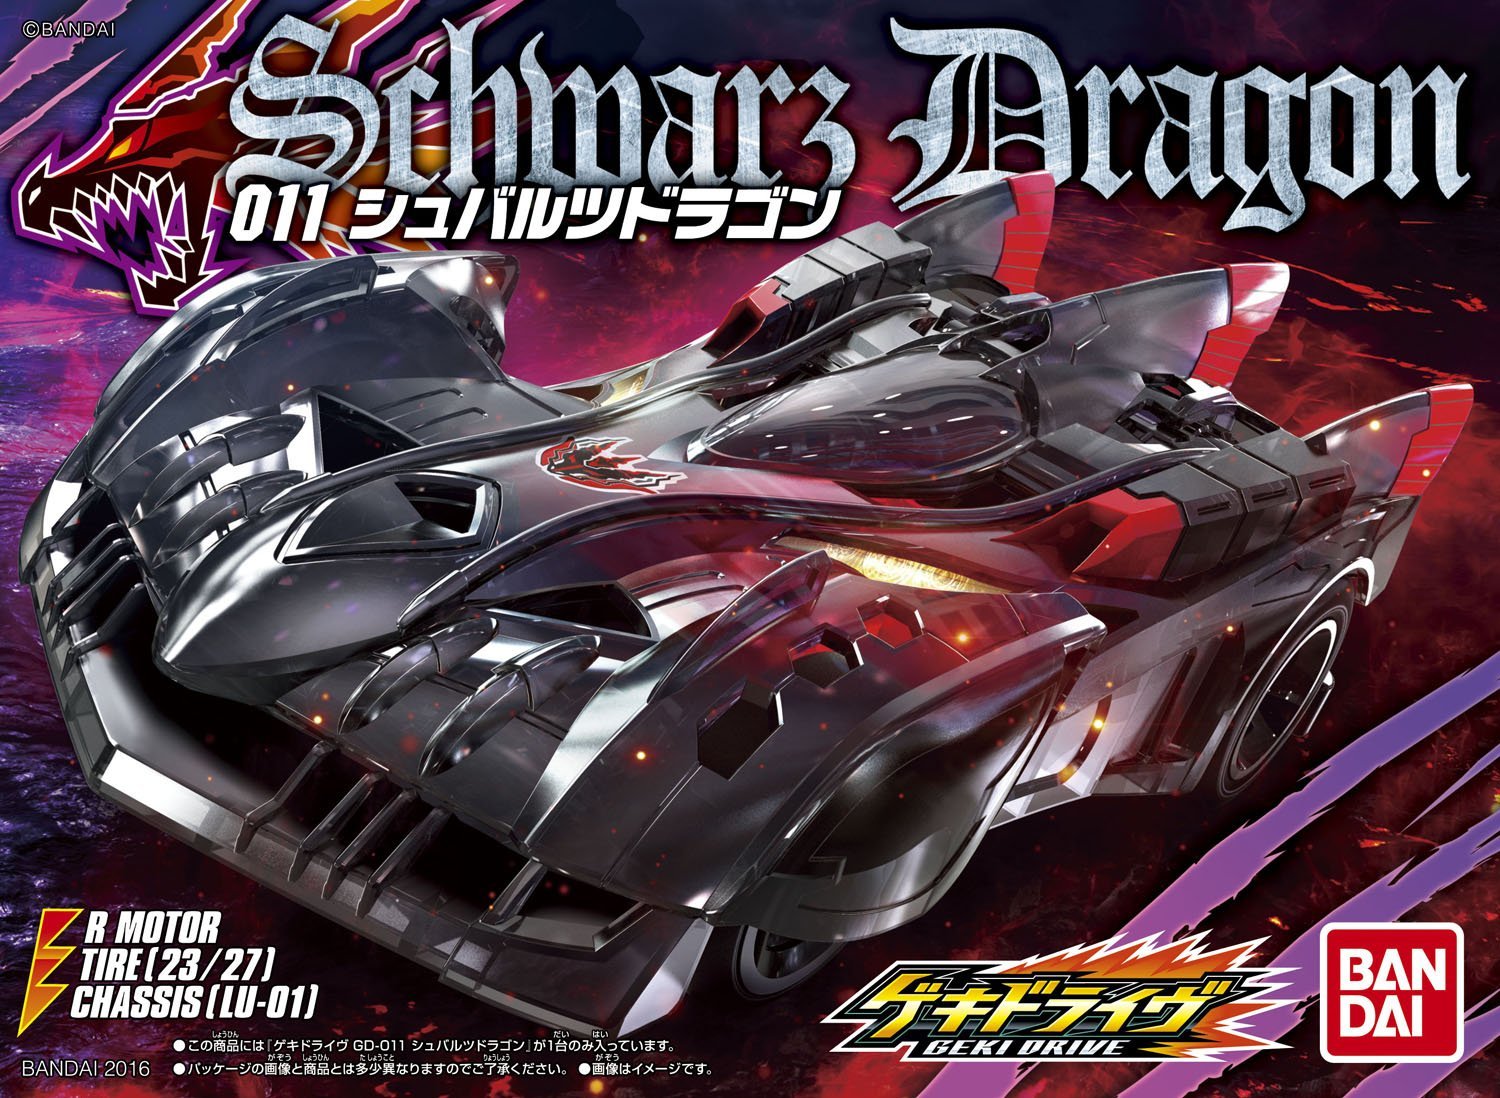 GD011 Geki Drive Schmars Dragon